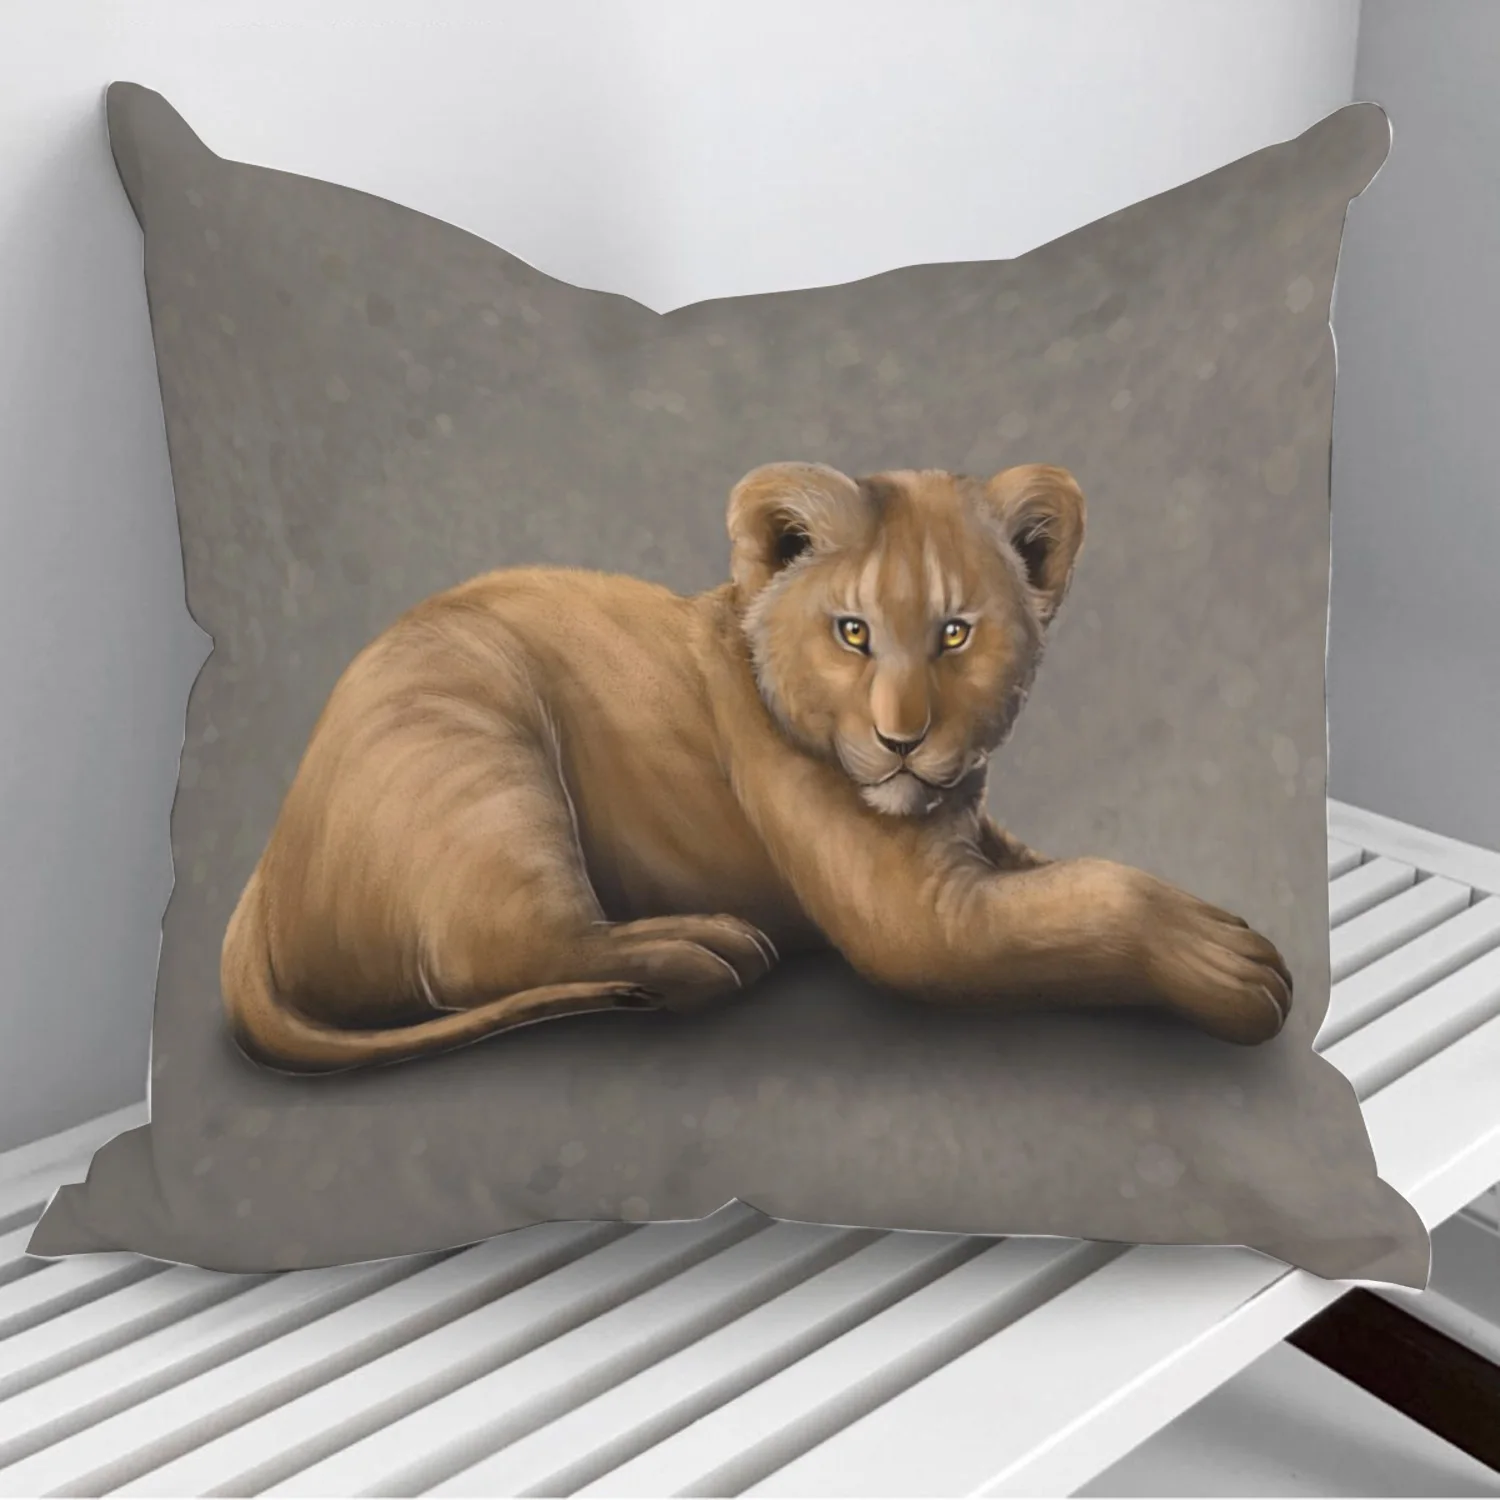 

African lion cub Throw Pillows Cushion Cover On Sofa Home Decor 45*45cm 40*40cm Gift Pillowcase Cojines Dropshipping